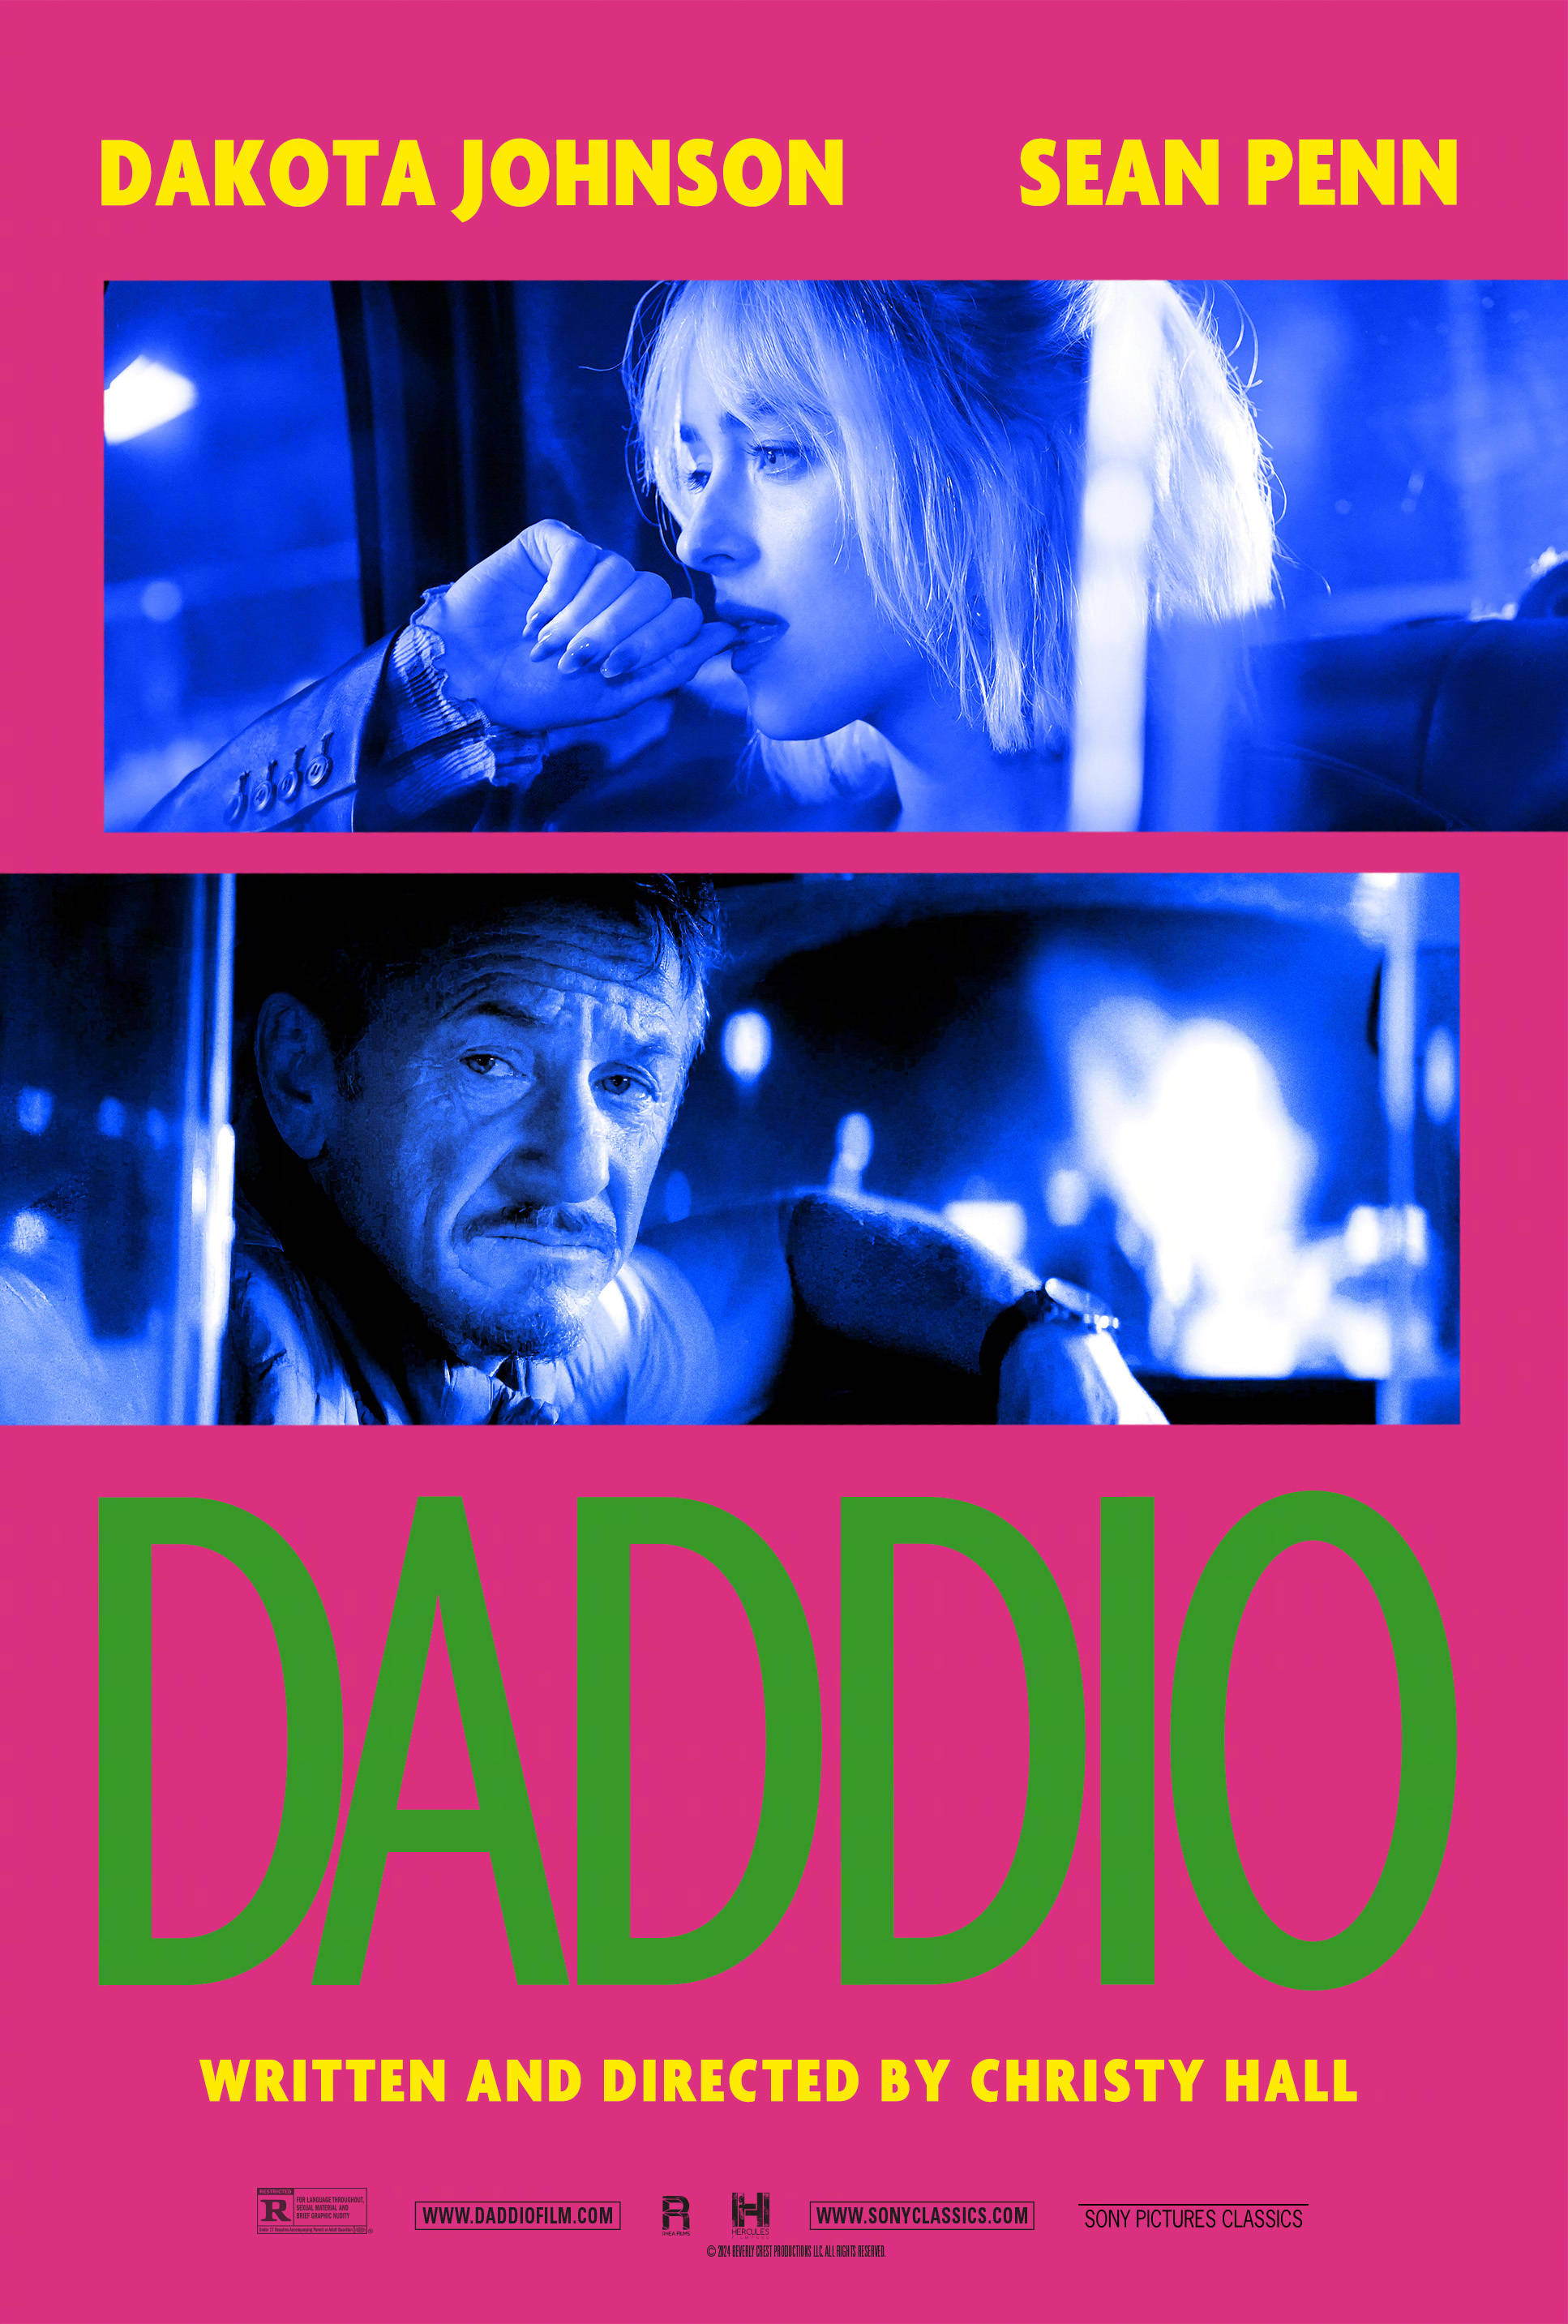 达科塔·约翰逊西恩·潘主演新片《达迪奥》发布新海报 6月28日北美上映